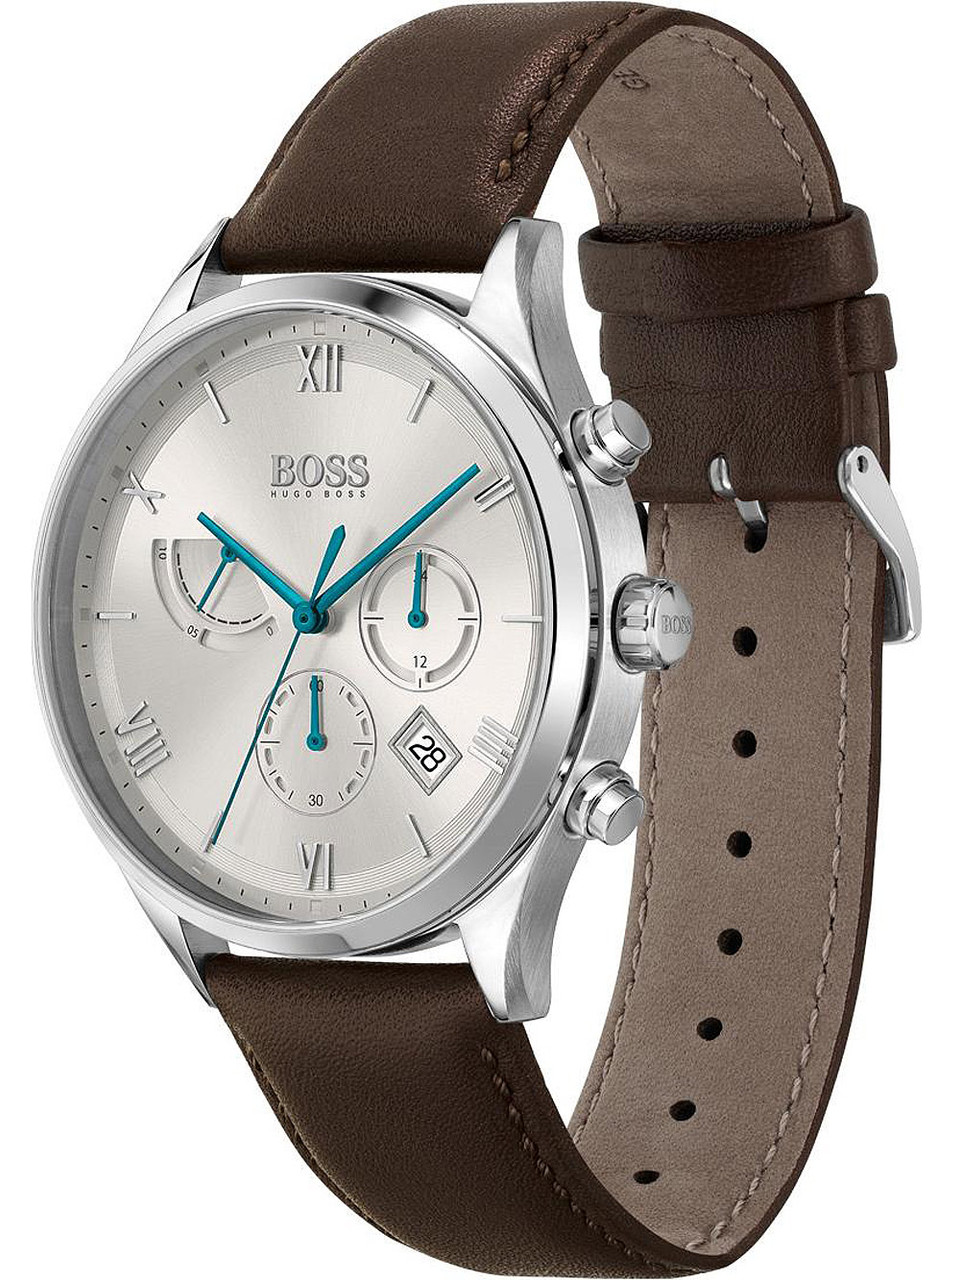 Hugo Boss 1513889 Gallant 44mm - owlica Genuine 5ATM Watches chrono 